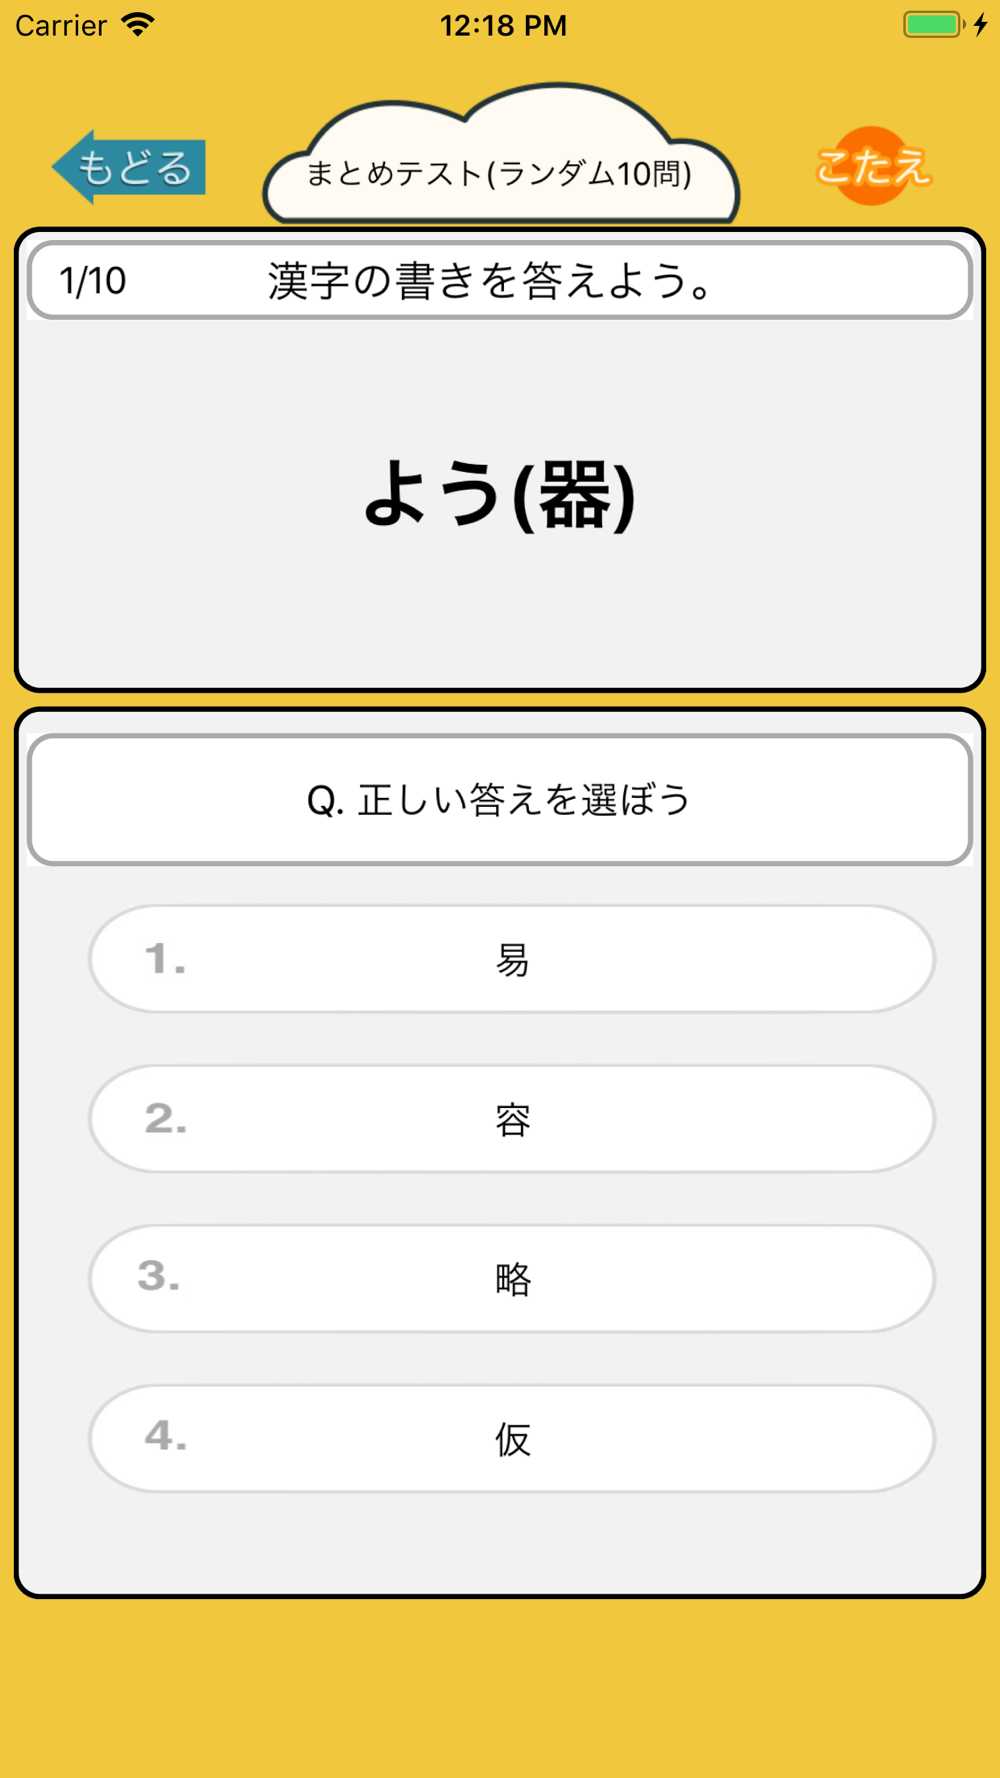 漢字検定6級 小学5年生 漢字ドリル Free Download App For Iphone Steprimo Com